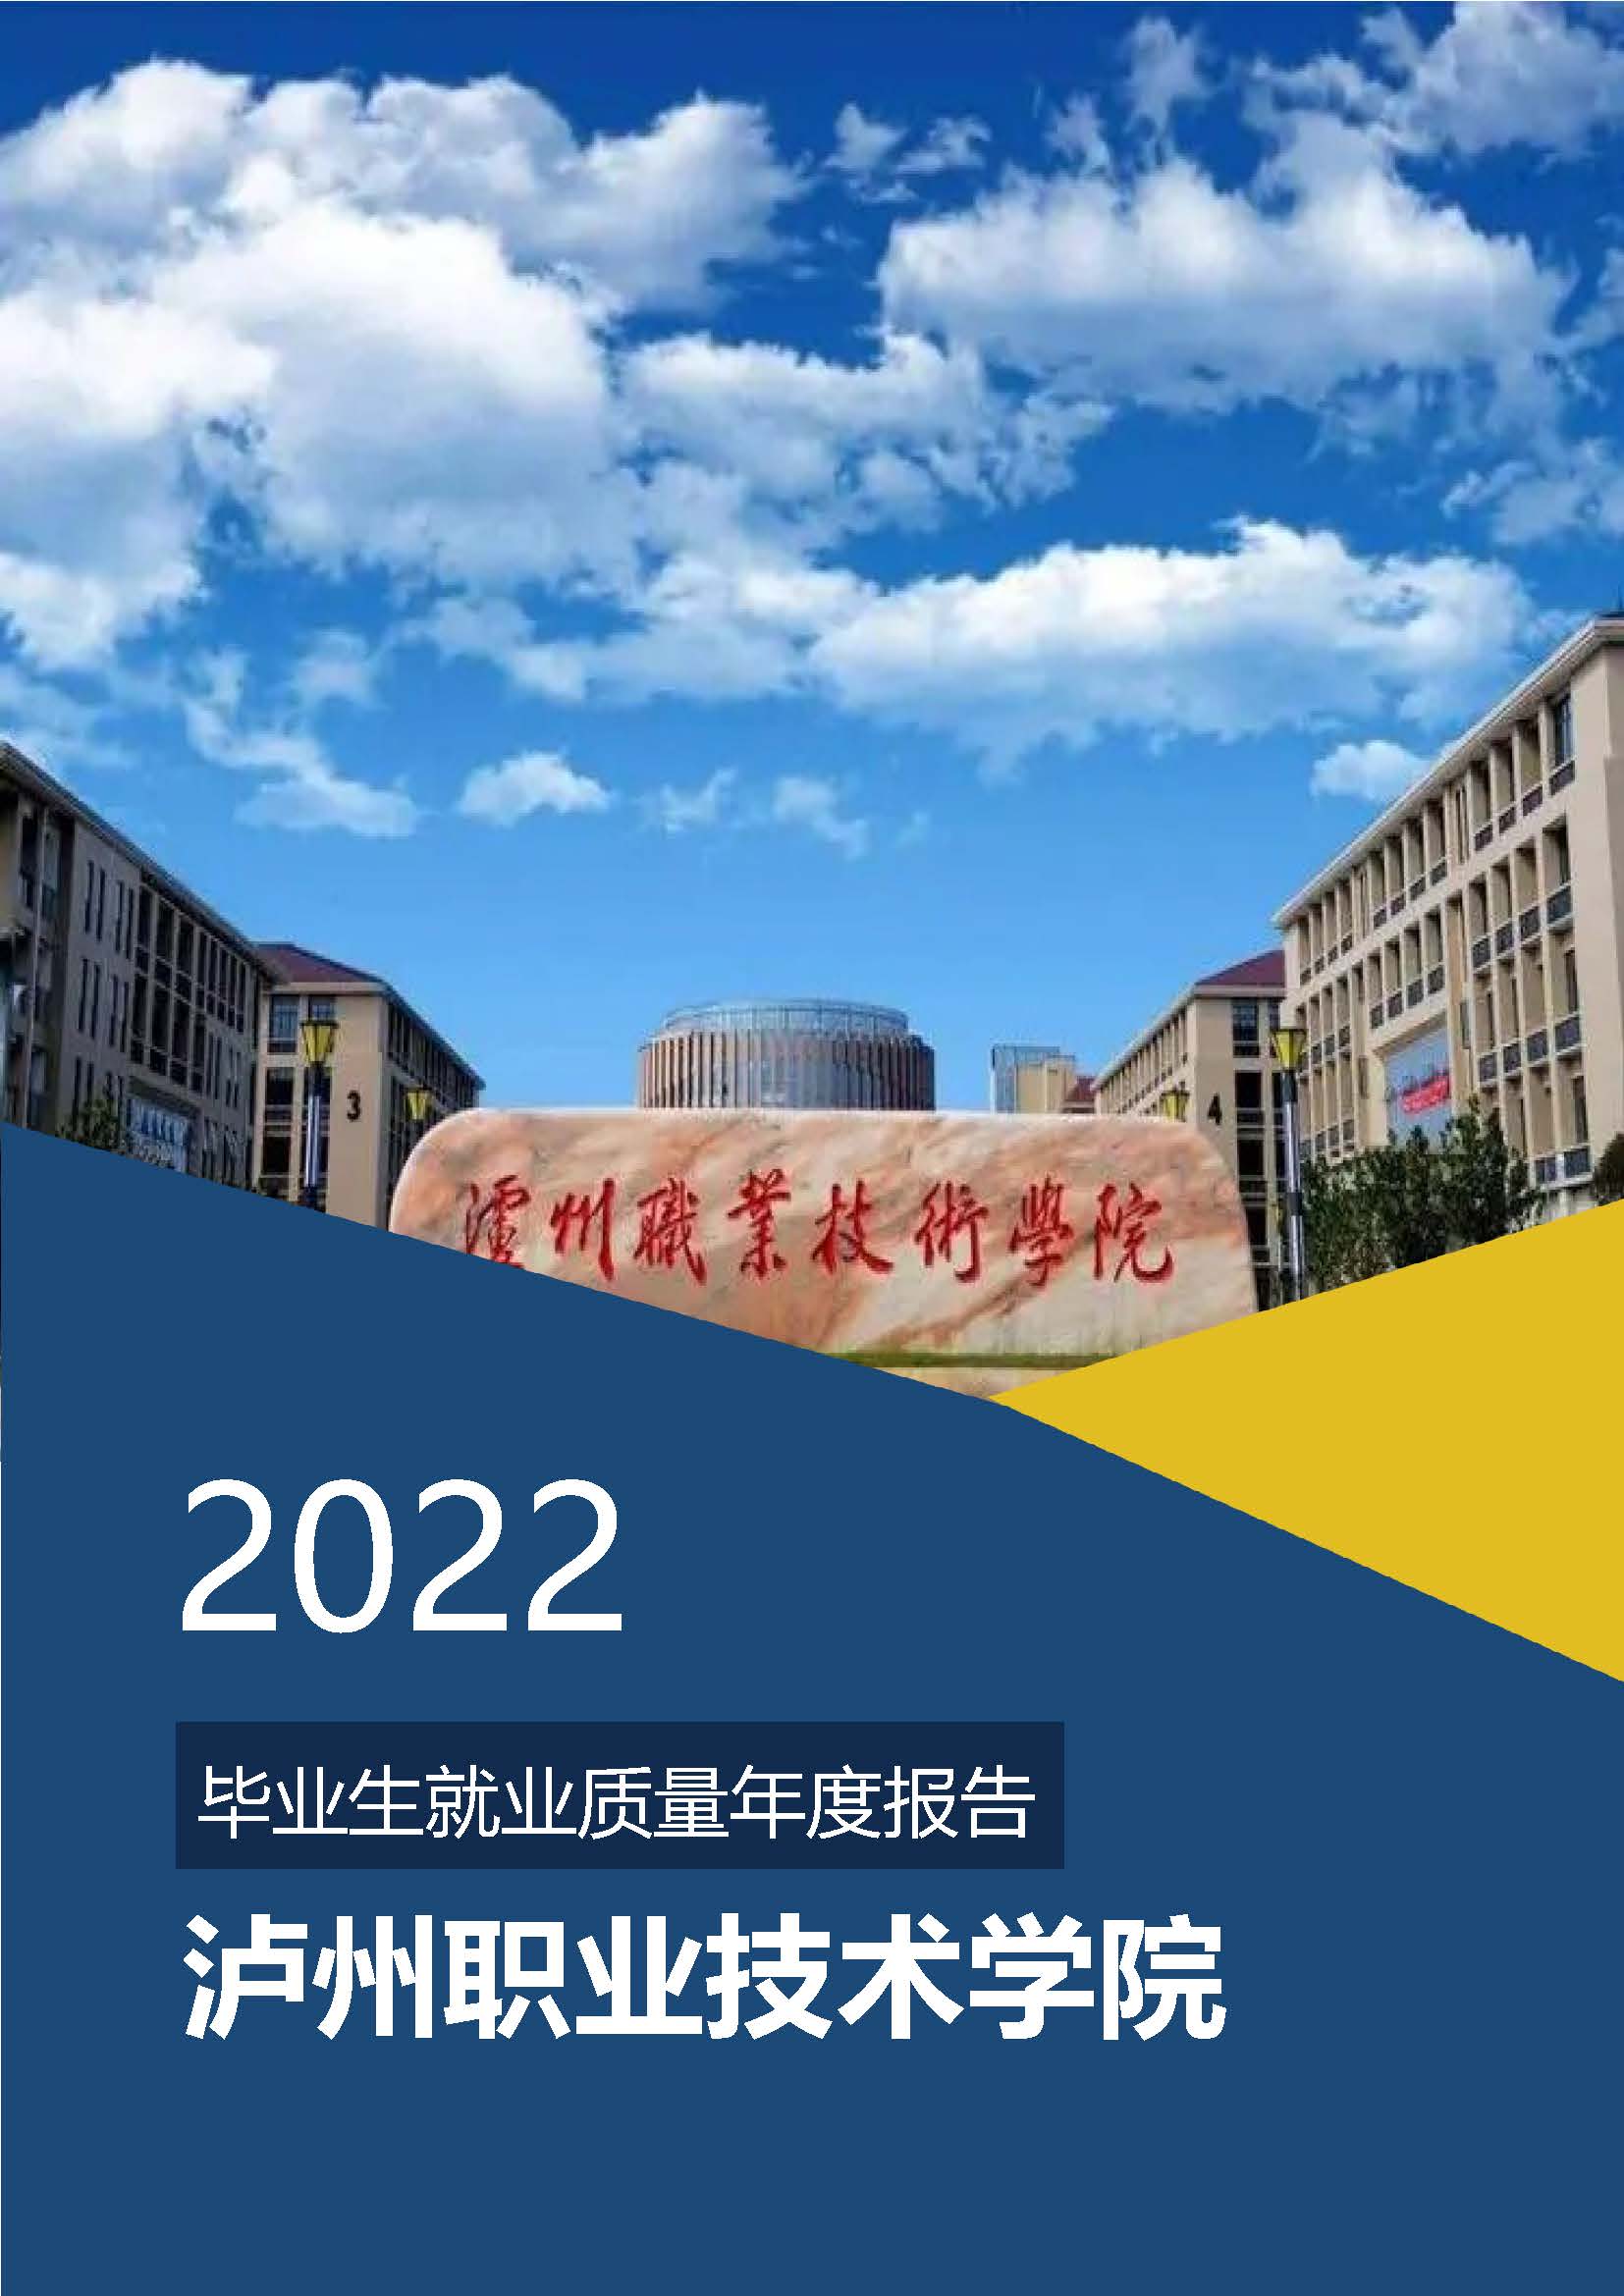 泸州职业技术学院2022年毕业生就业质量年度报告 -V4 1.jpg